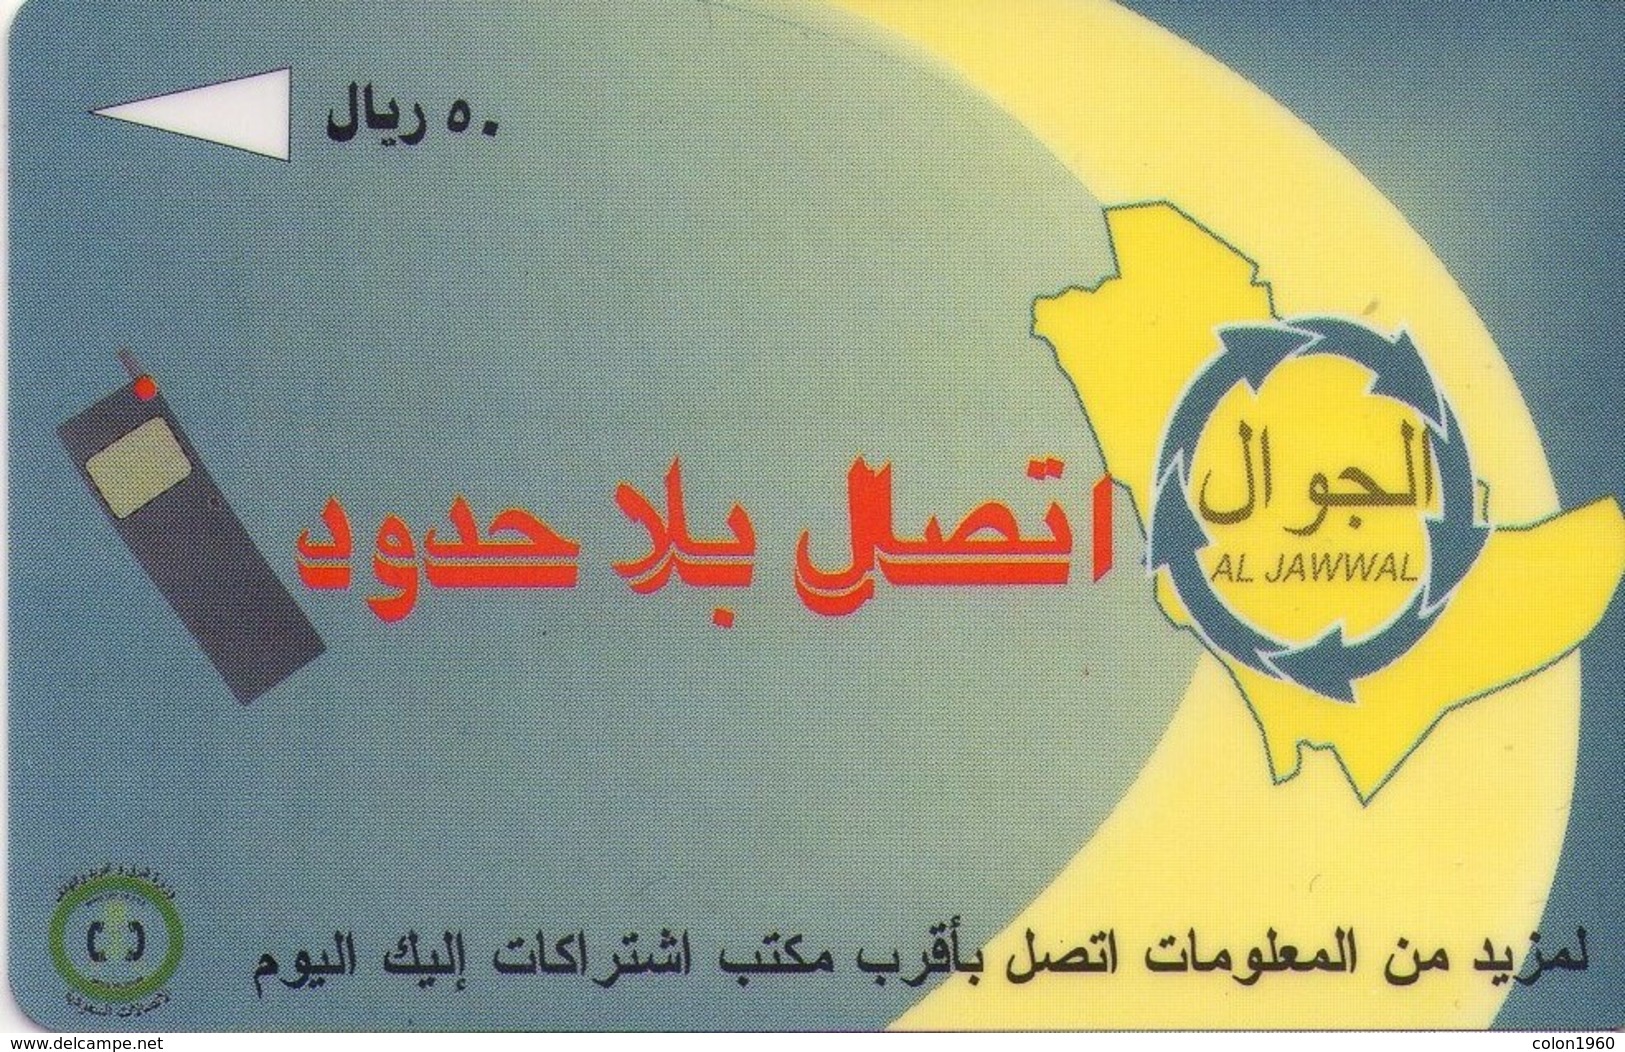 ARABIA SAUDITA. Al Jawwal Mobile Phones. 1996-01. SA-STC-0014 (SAUDF). (006) - Saudi-Arabien